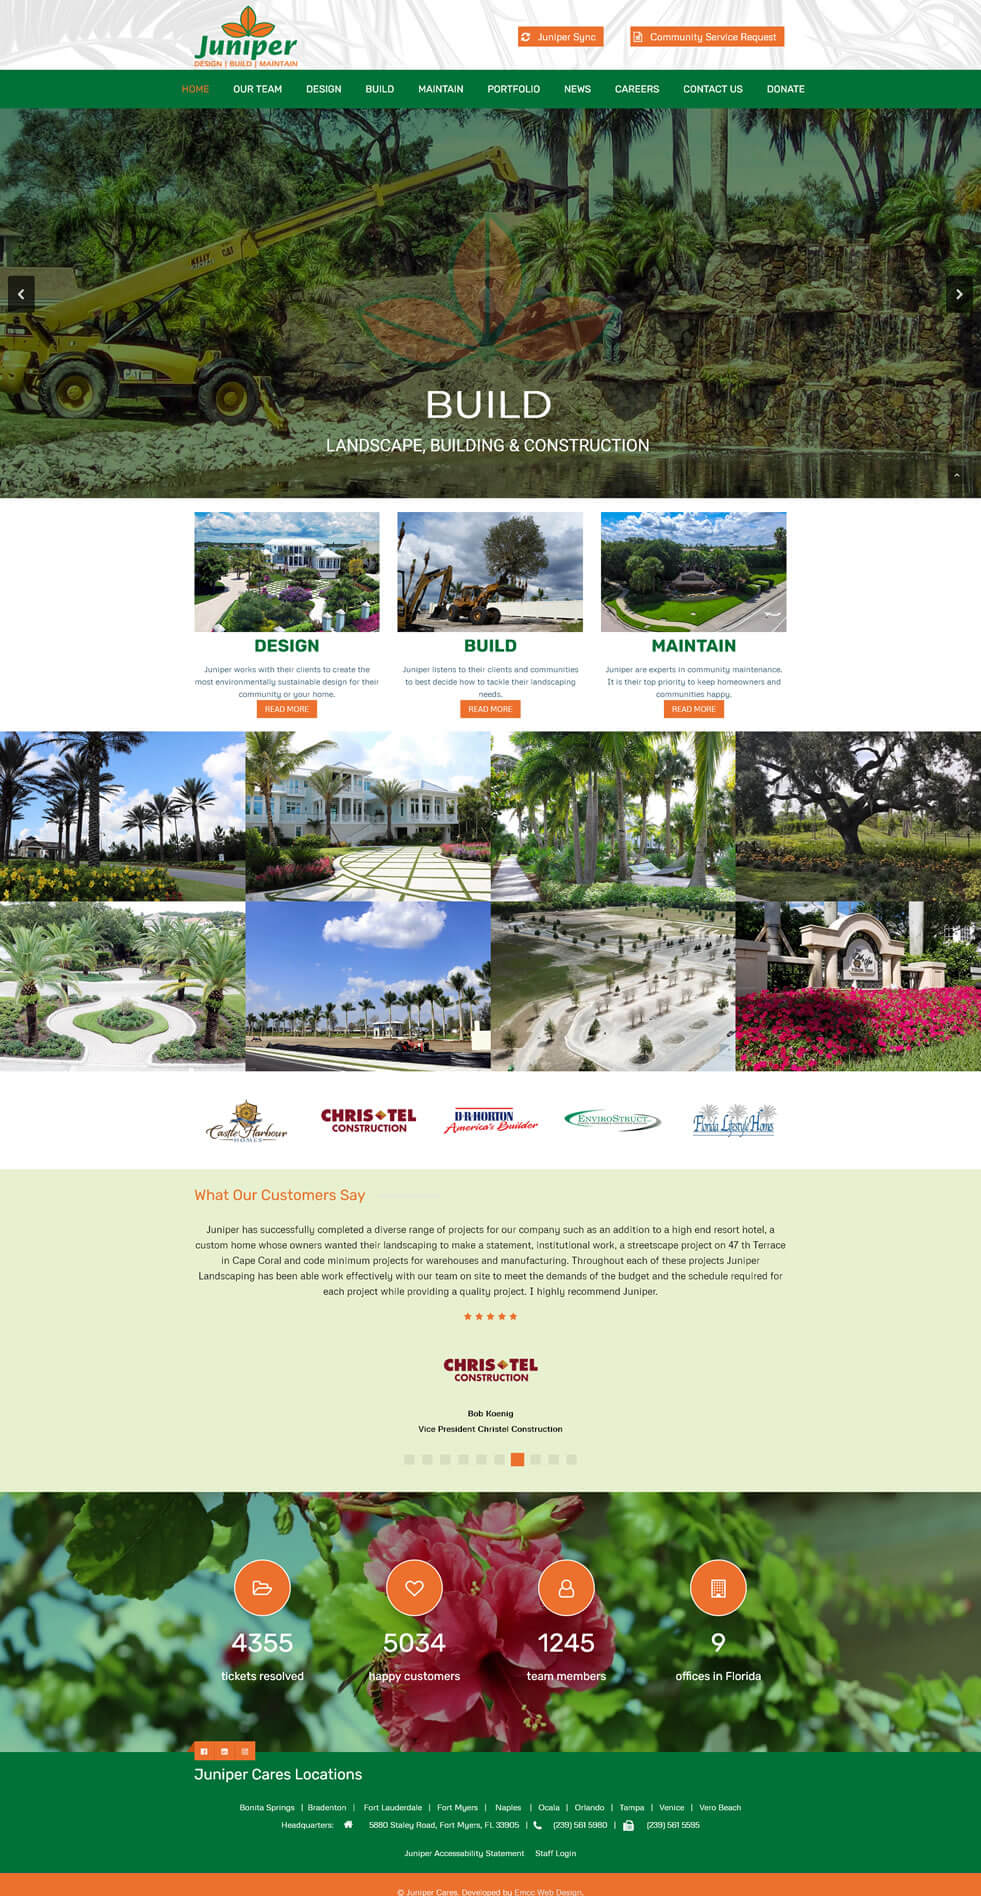 Juniper Design Build Maintain Florida Landscaping